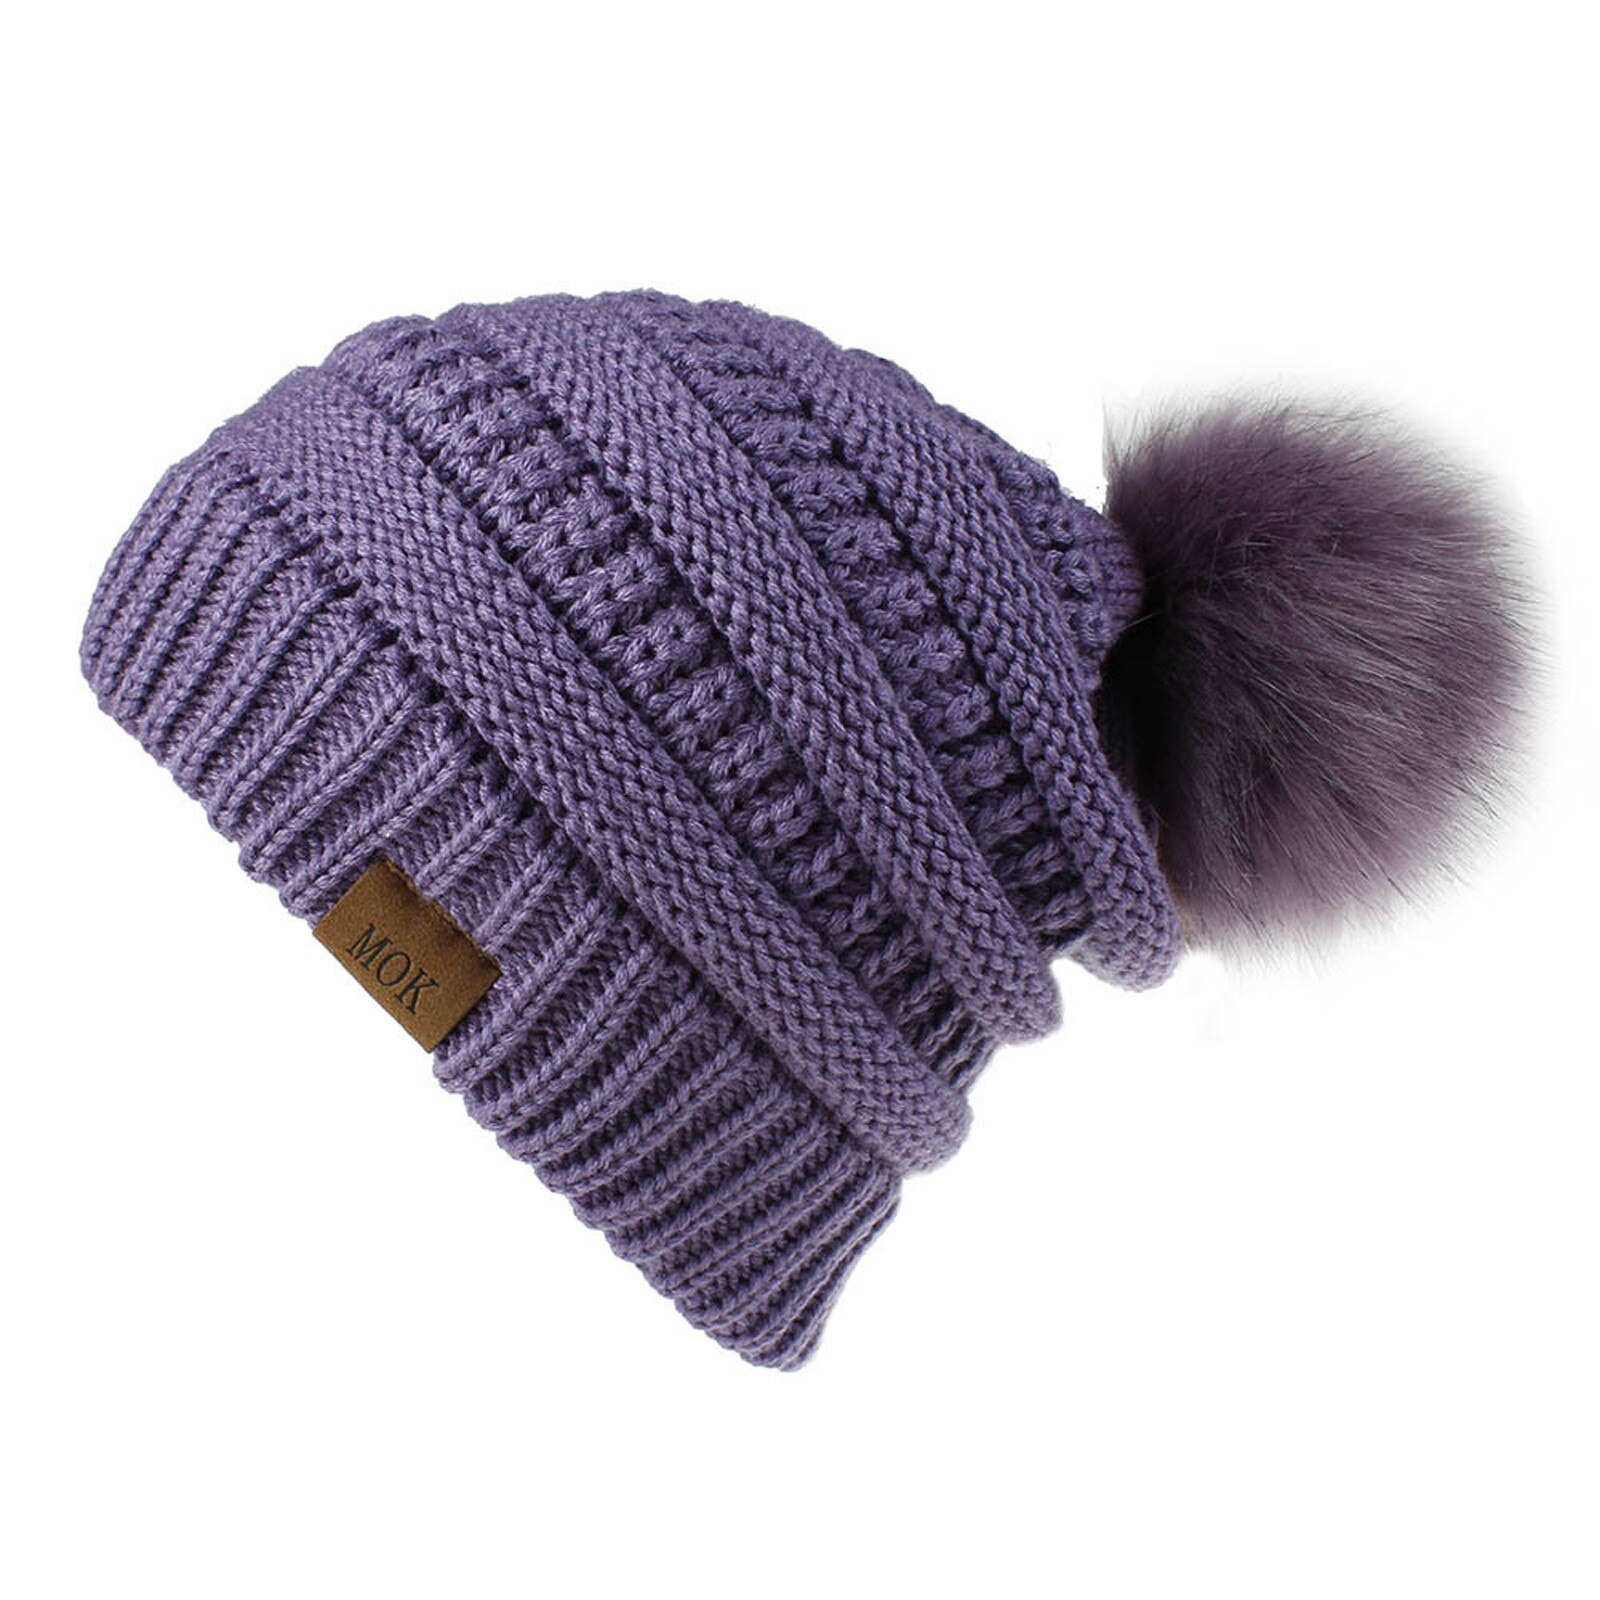 E la moda donna nuova E di alta qualità mantiene caldi cappelli invernali cappello a orlo in lana lavorato a maglia morbido delicato sulla pelle, traspirante: PP